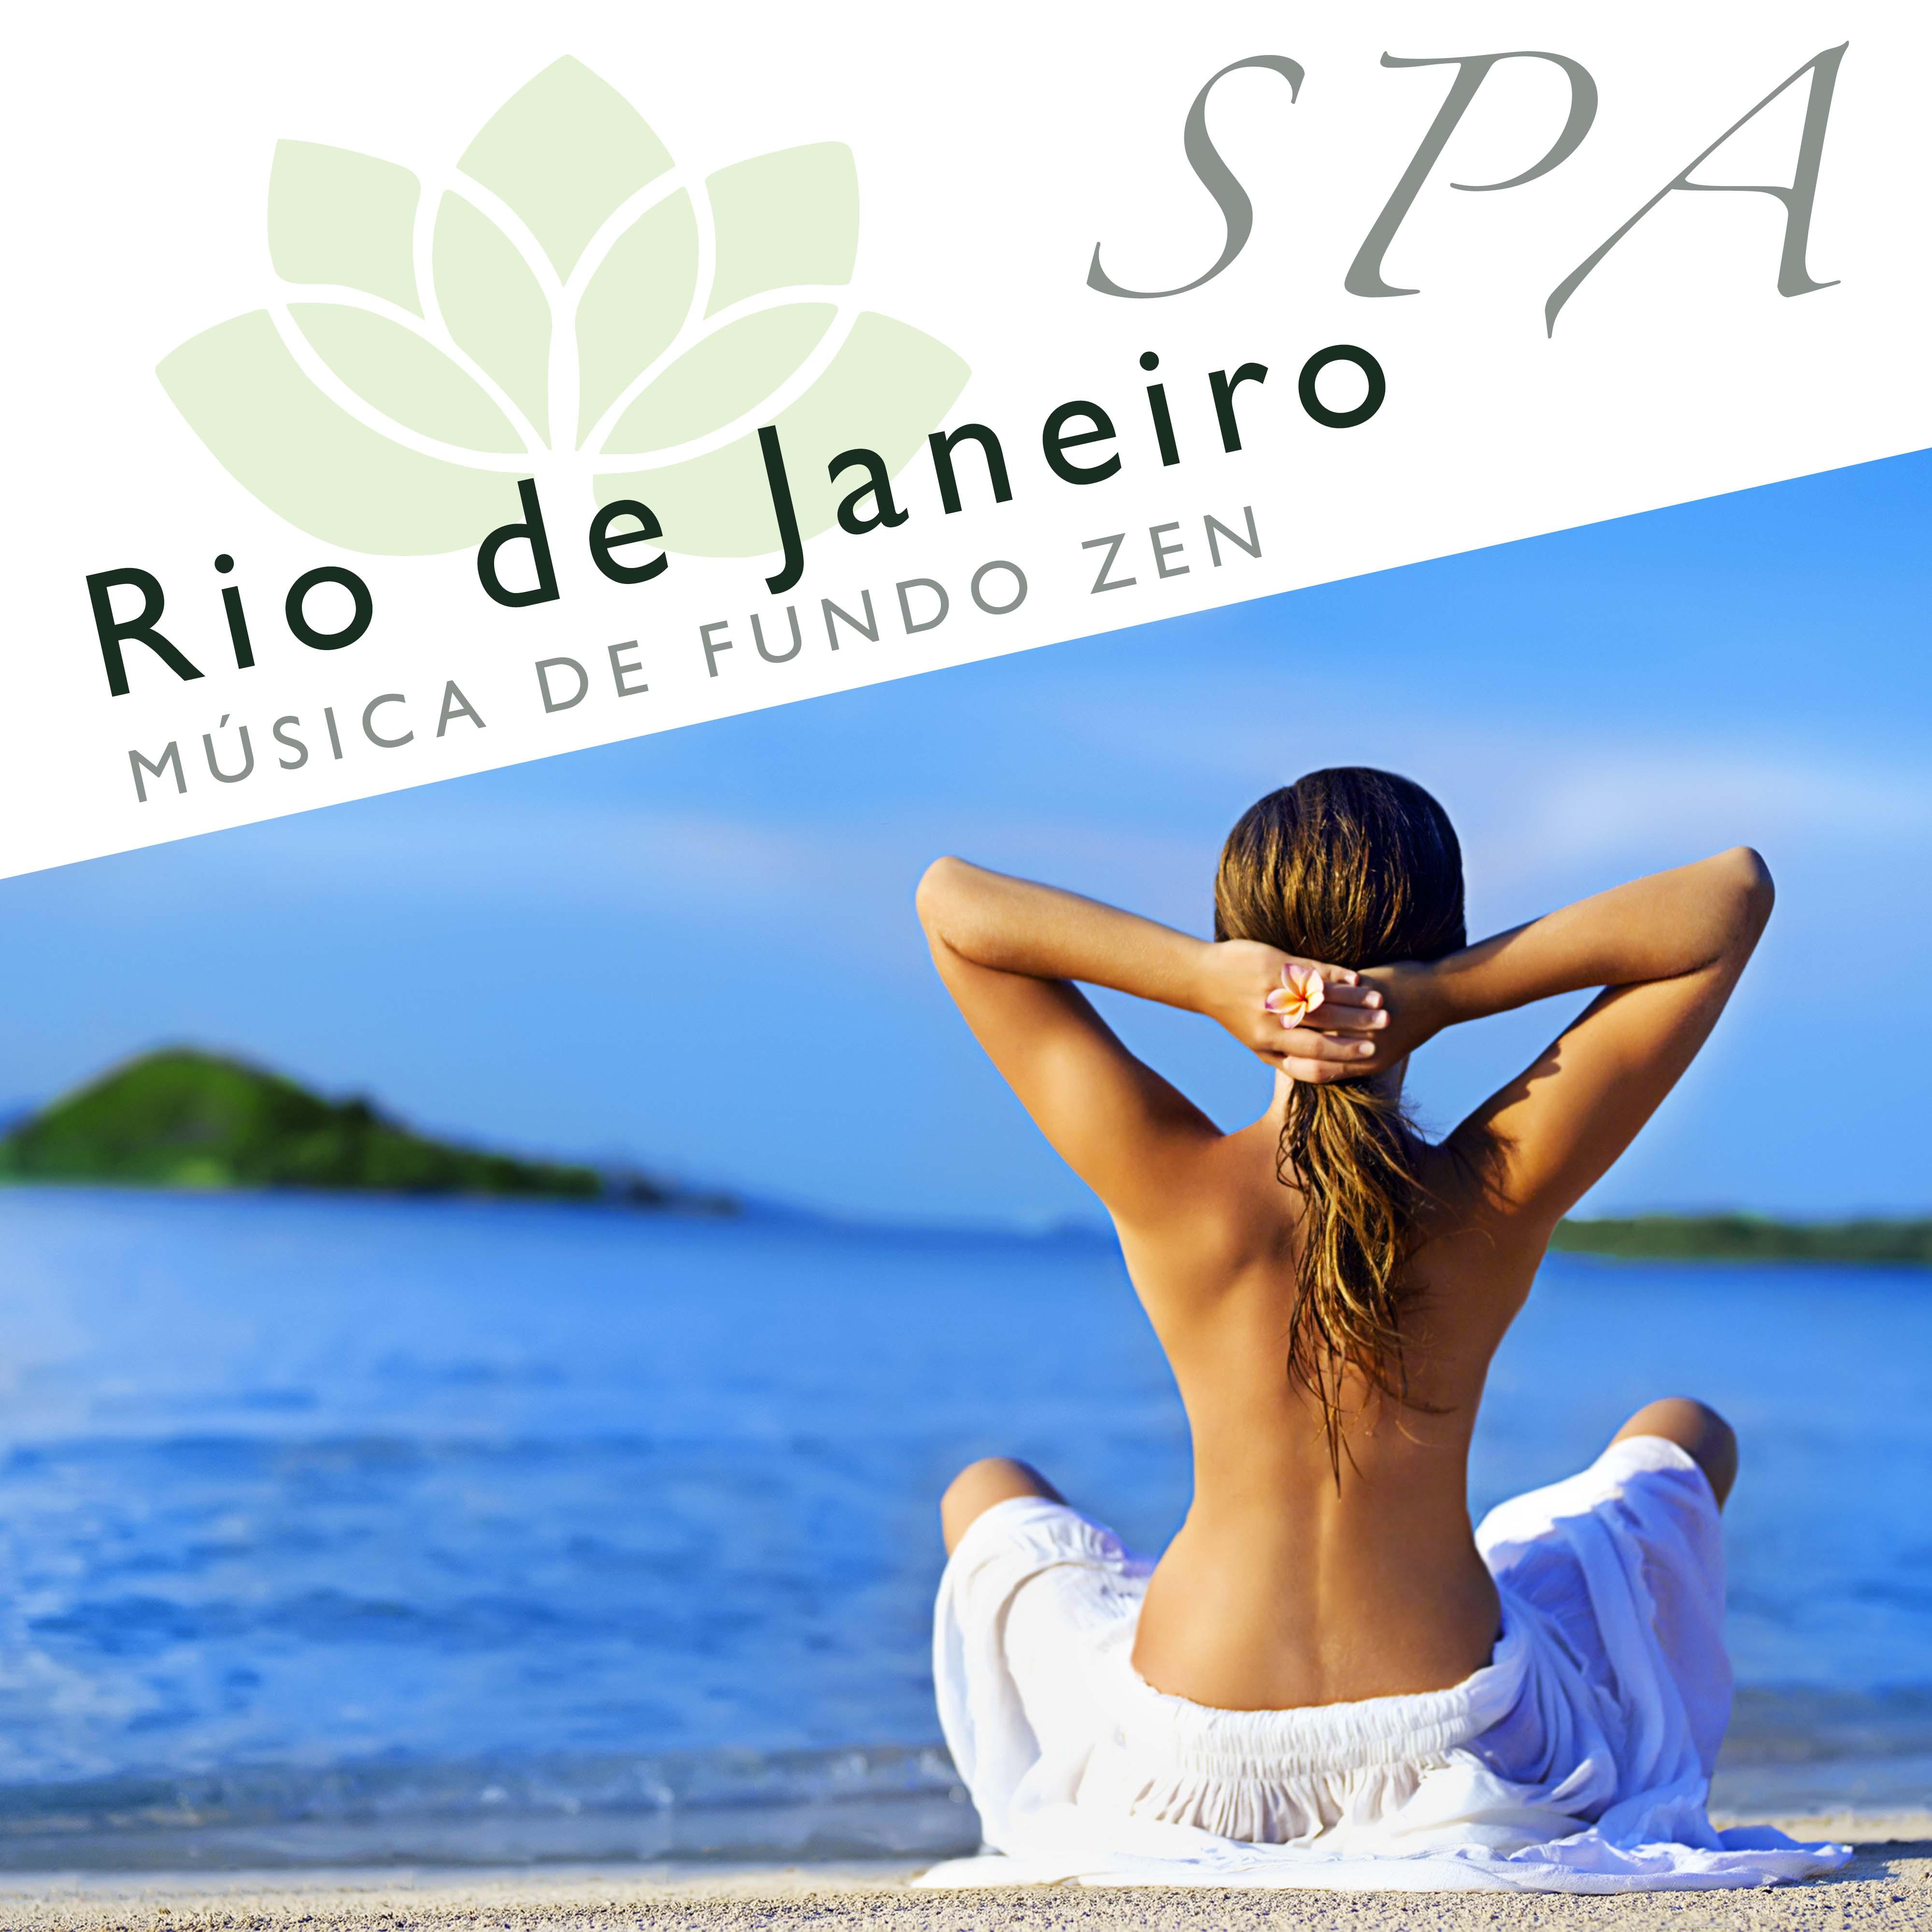 Spa Rio de Janeiro: Mu sica de Fundo Zen para Tratamentos de Spa